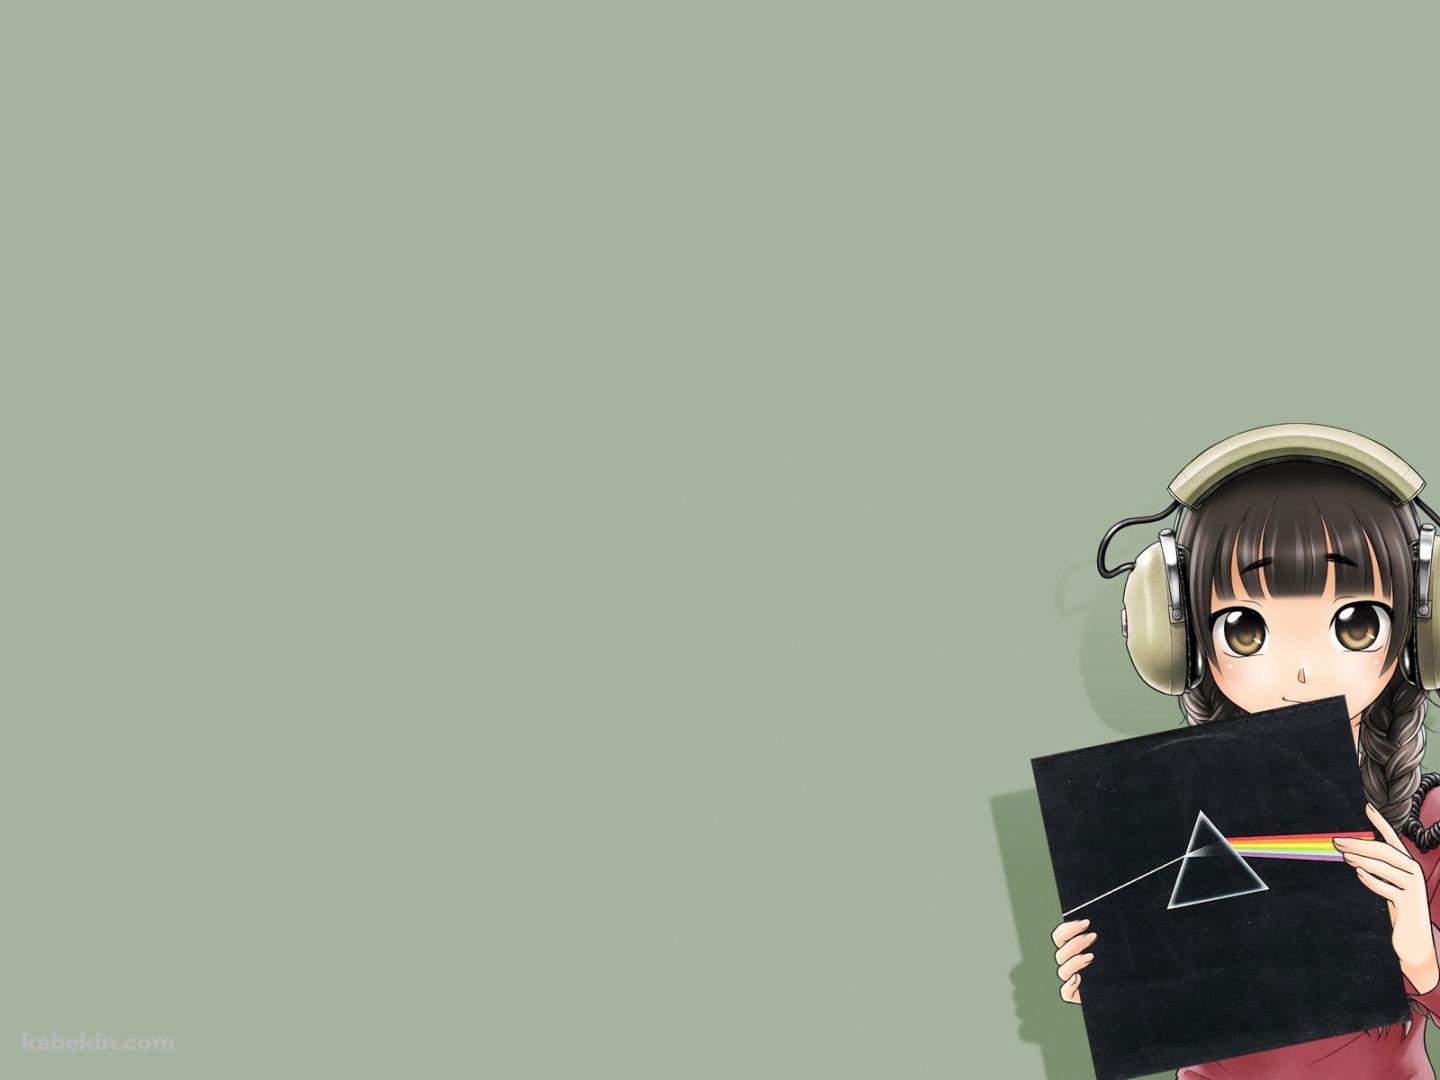 レコードジャケットを持つ女の子の壁紙(1440px x 1080px) 高画質 PC・デスクトップ用